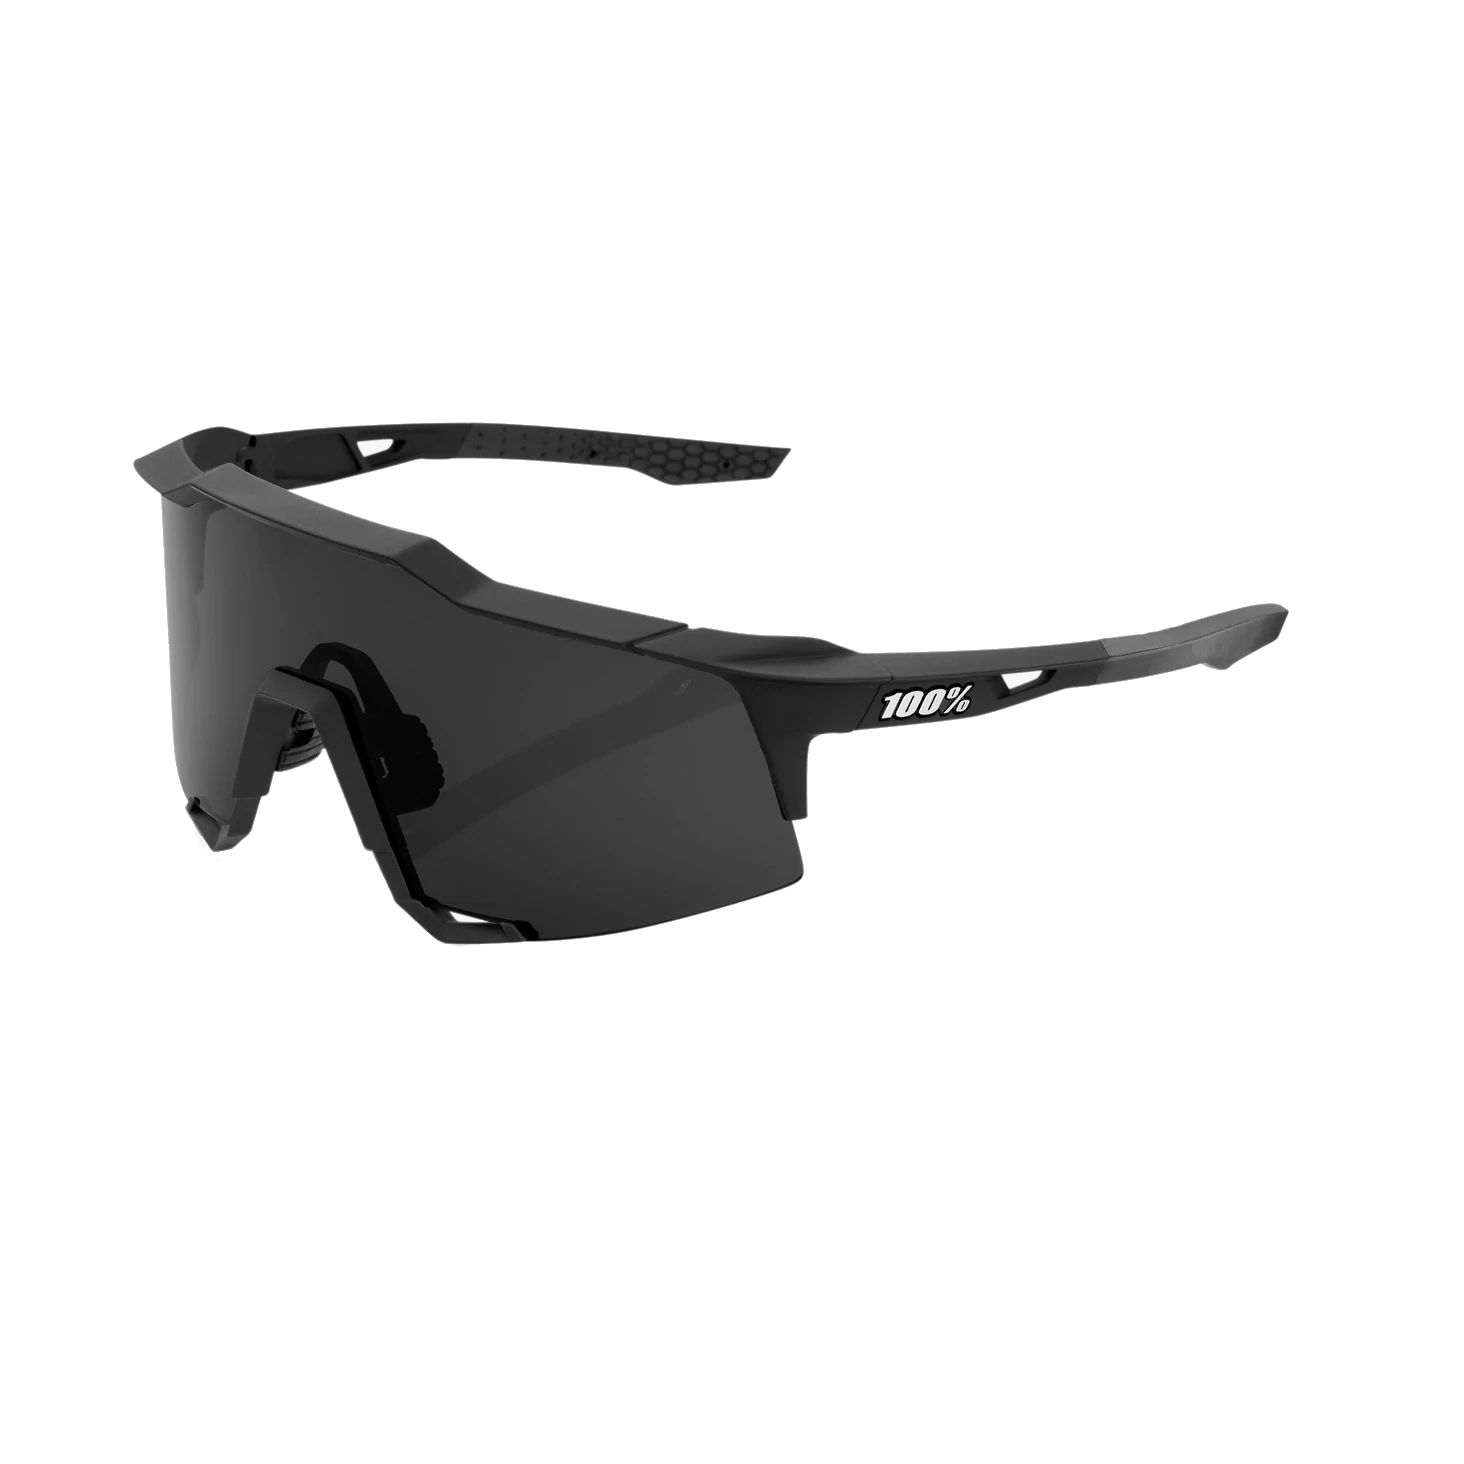 Produktbild von 100% Speedcraft Brille - Smoke Lens - Soft Tact Black / + Clear